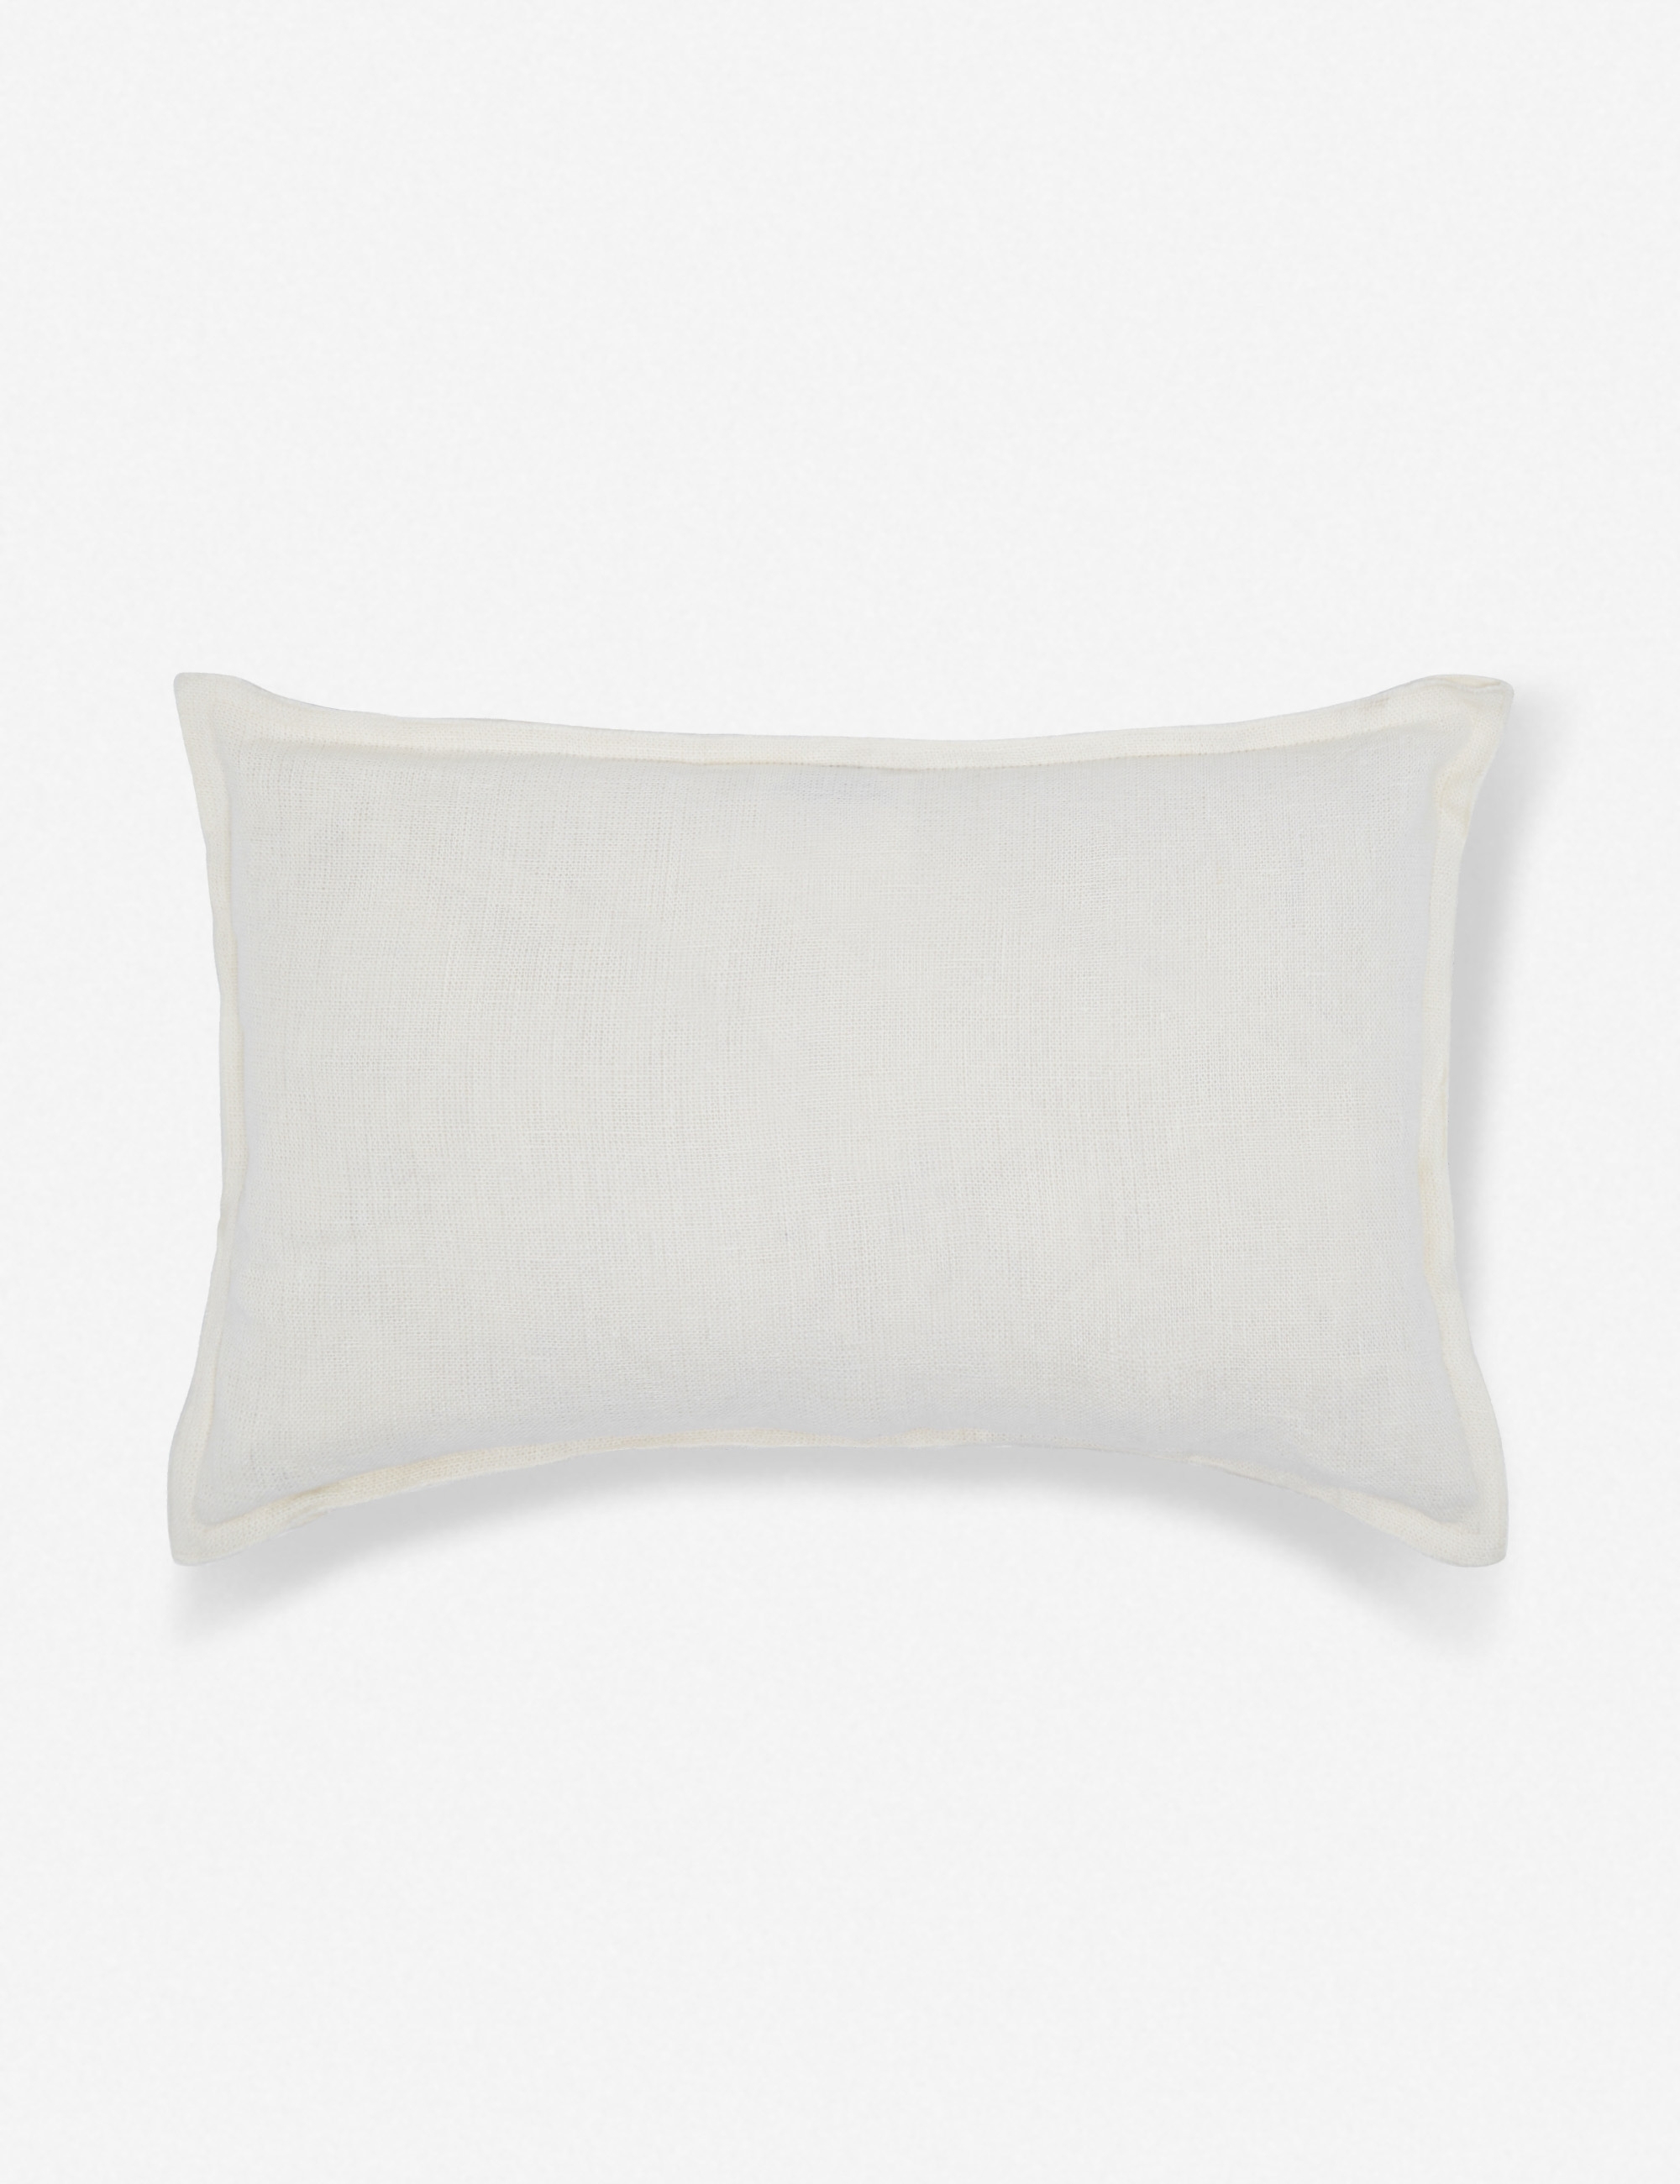 Arlo Linen Lumbar Pillow, Ivory - Image 1